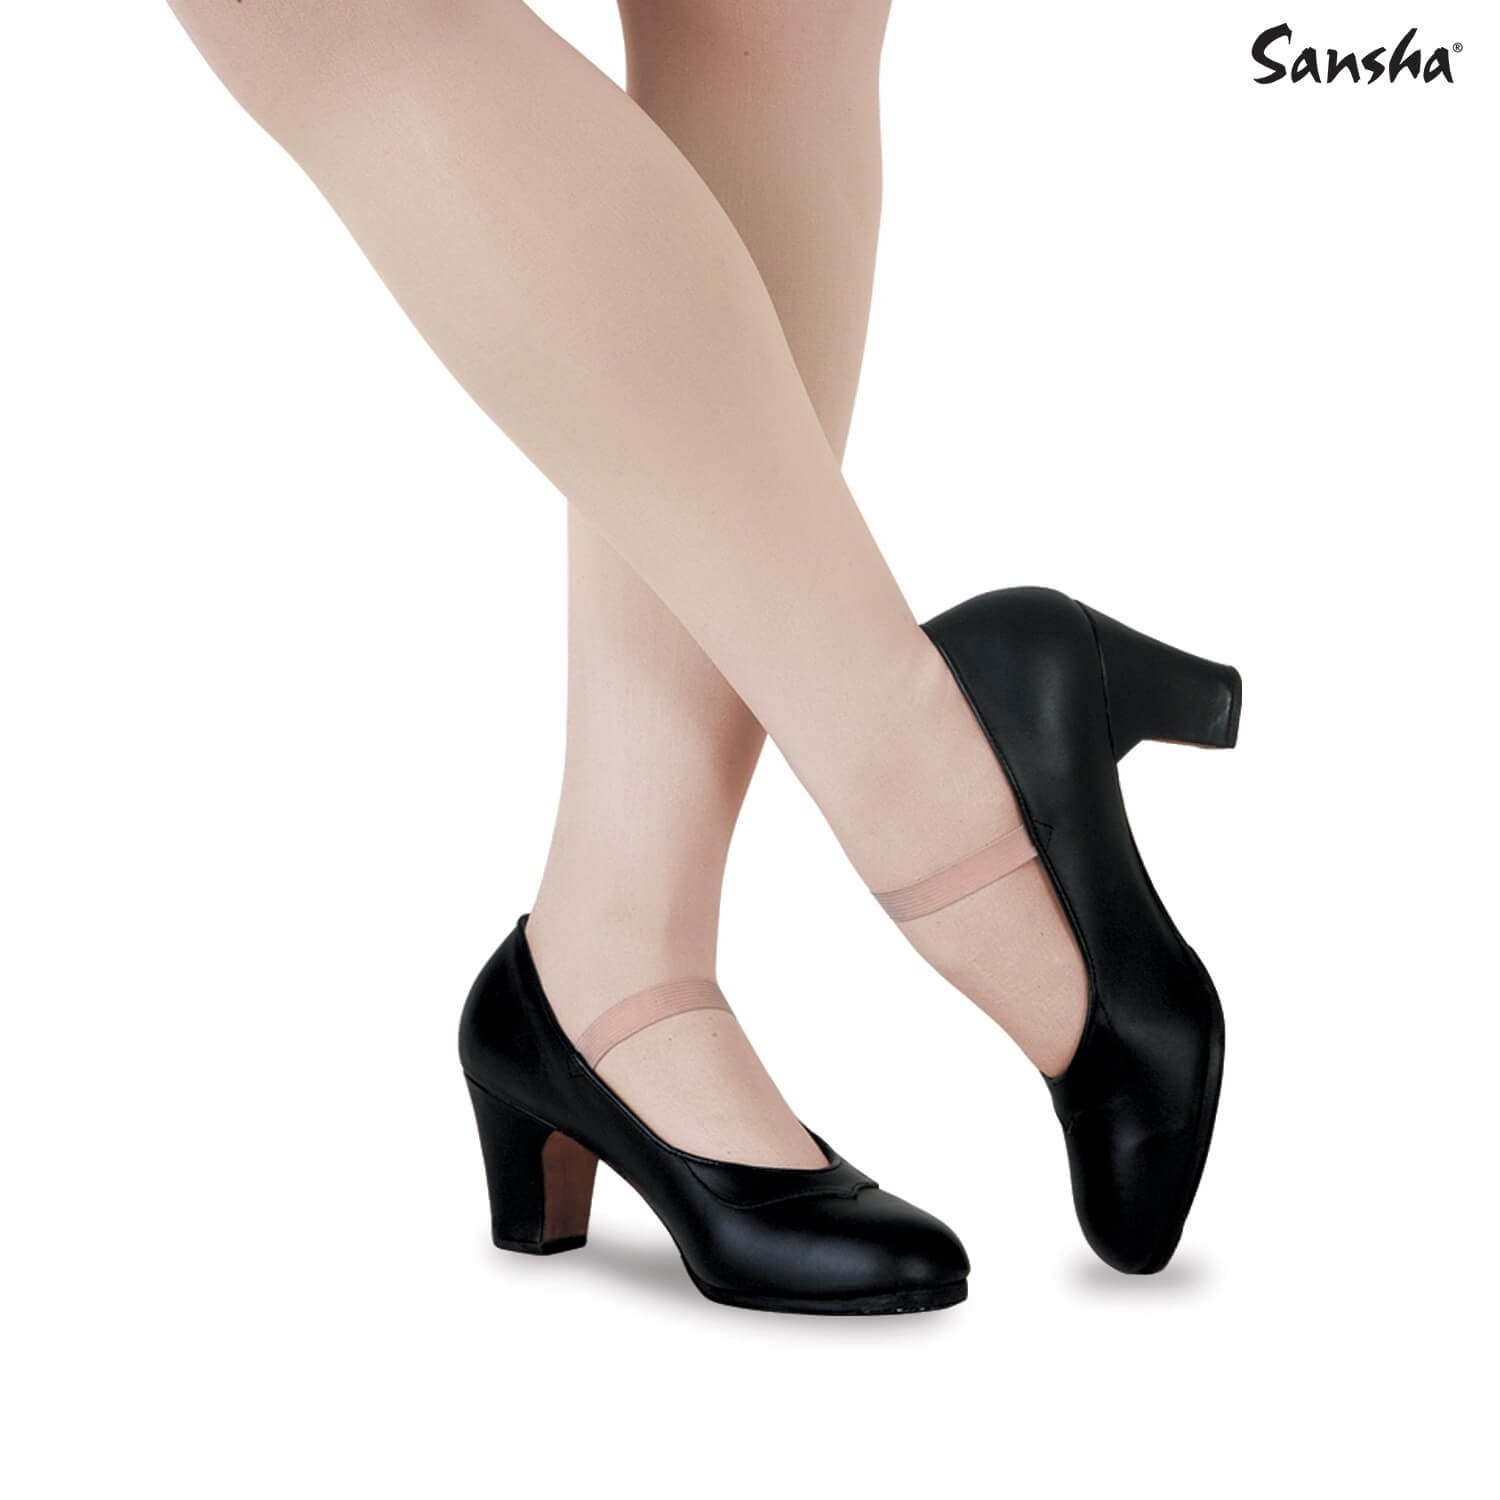 Sansha "SARAGOSA" Original flamenco shoes - Click Image to Close